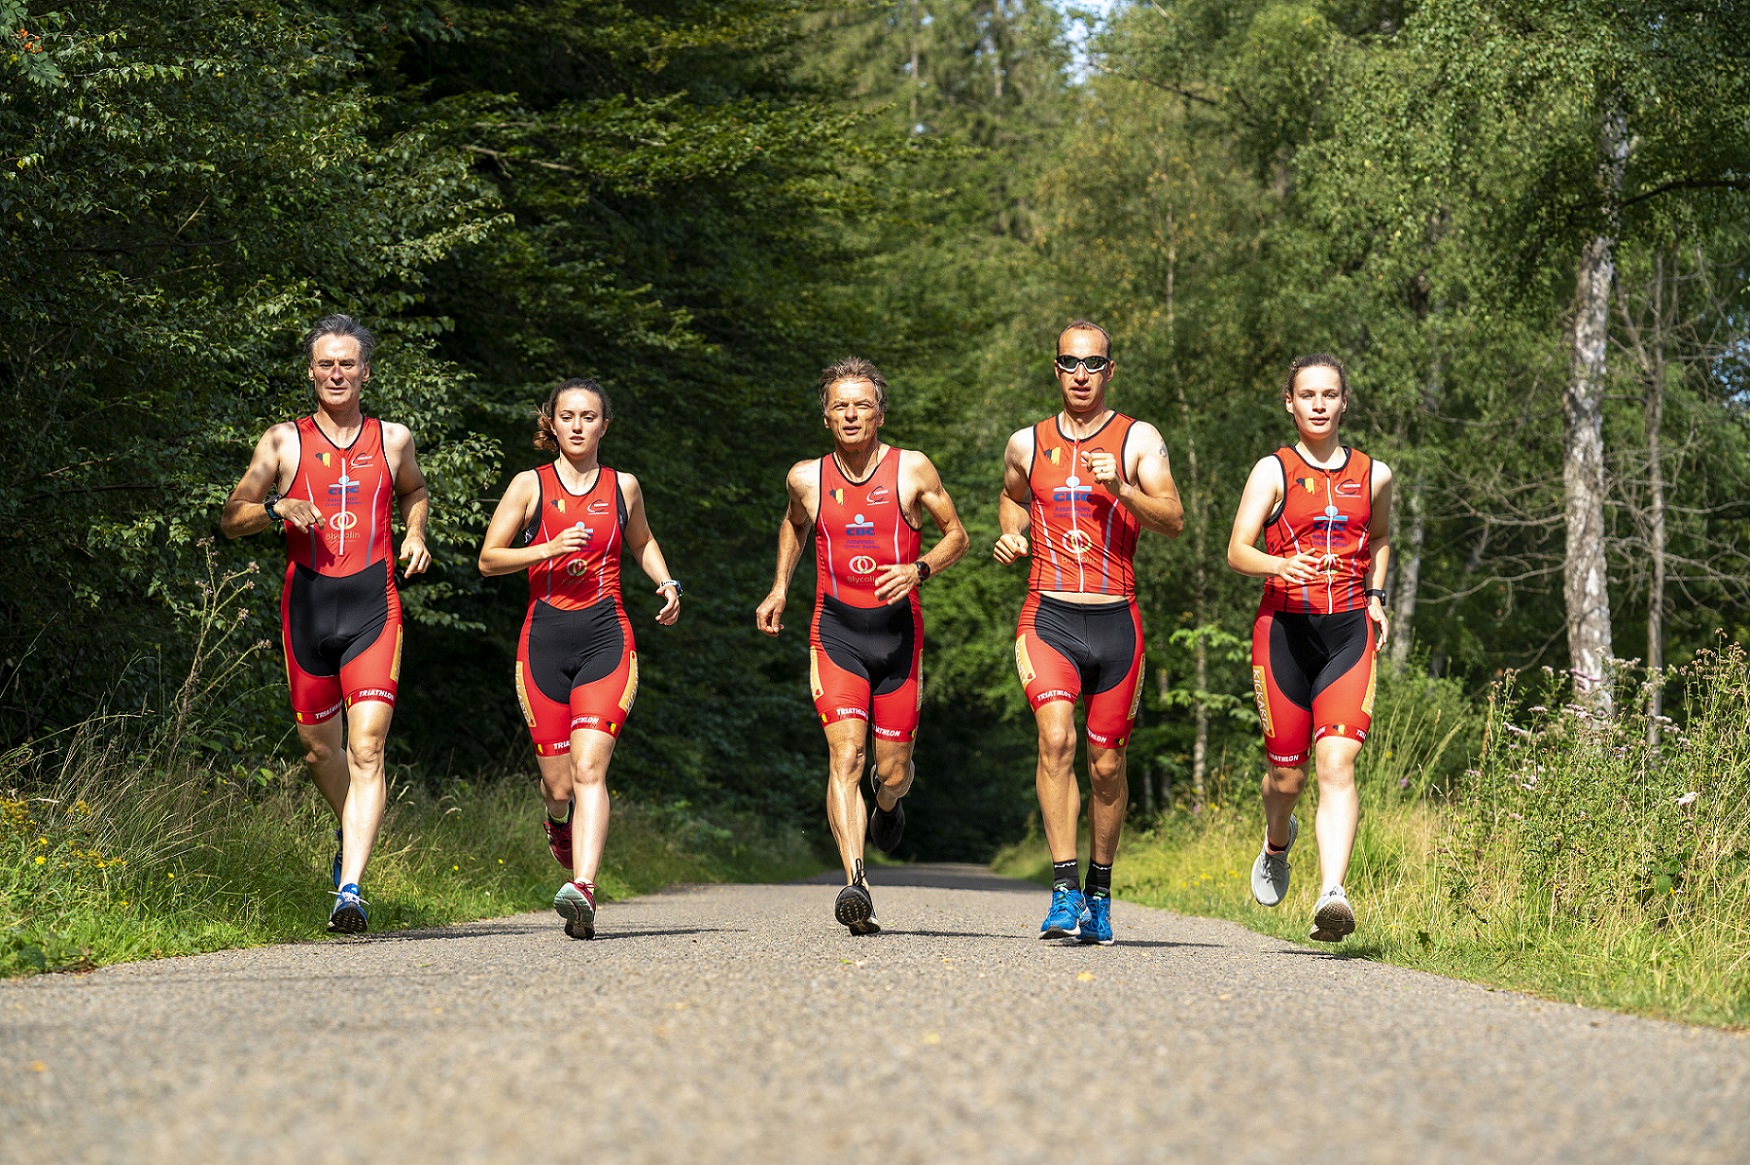 Fünf Triathleten, darunter zwei junge Mädchen und drei ältere Herren, Laufen im Wald nebeneinander auf einem asphaltierten Weg.